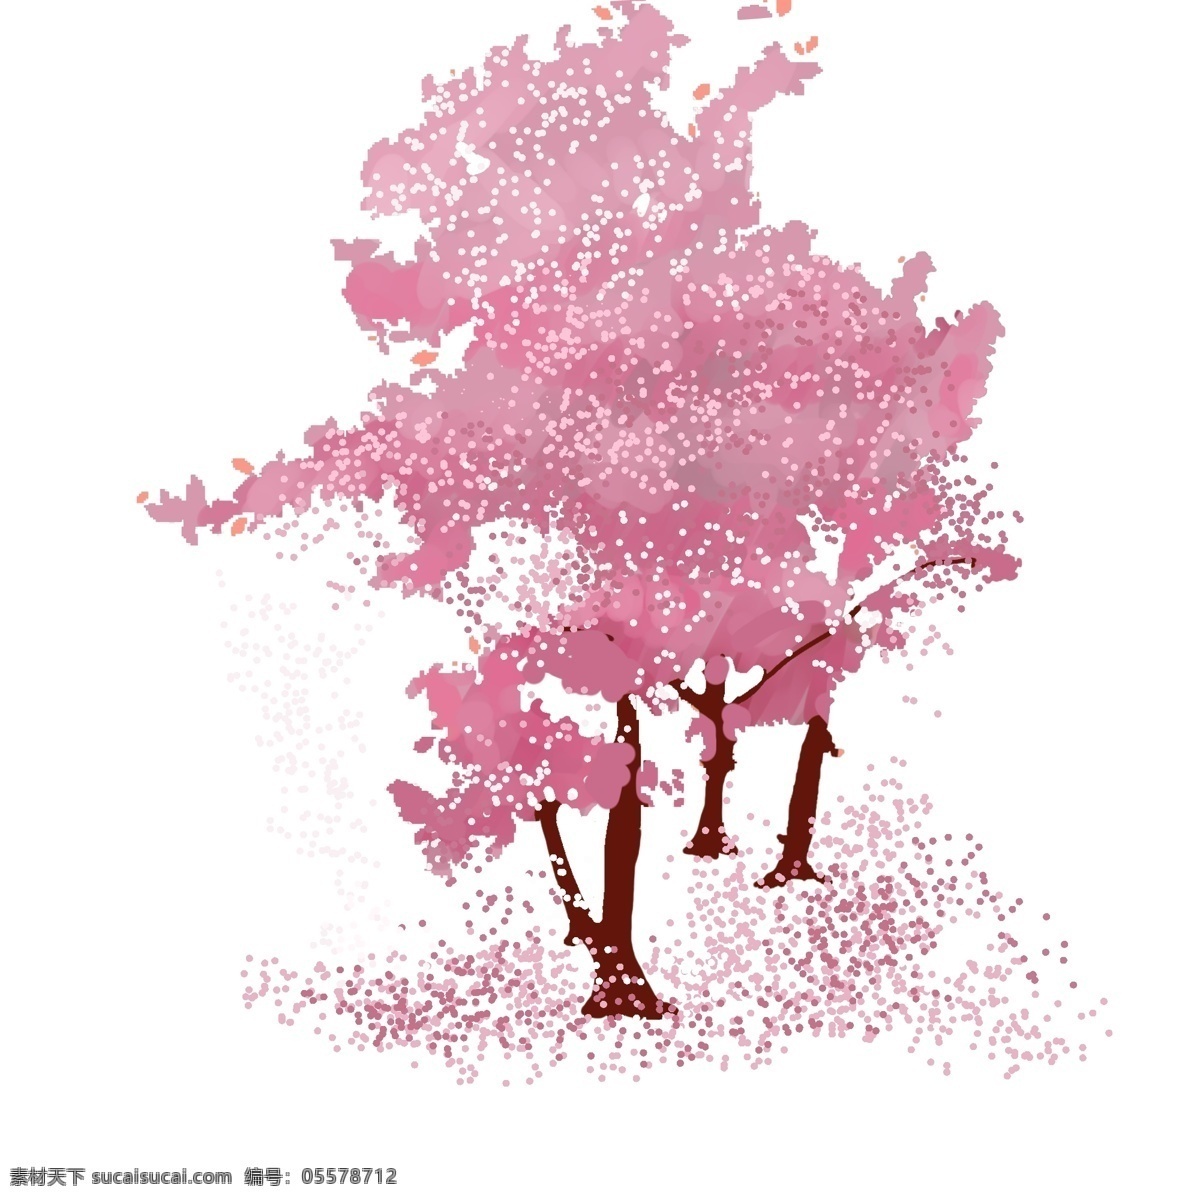 日本 樱花 装饰 插画 日本樱花 粉色的樱花 漂亮的樱花 创意樱花 精美樱花 樱花装饰 粉色的花瓣